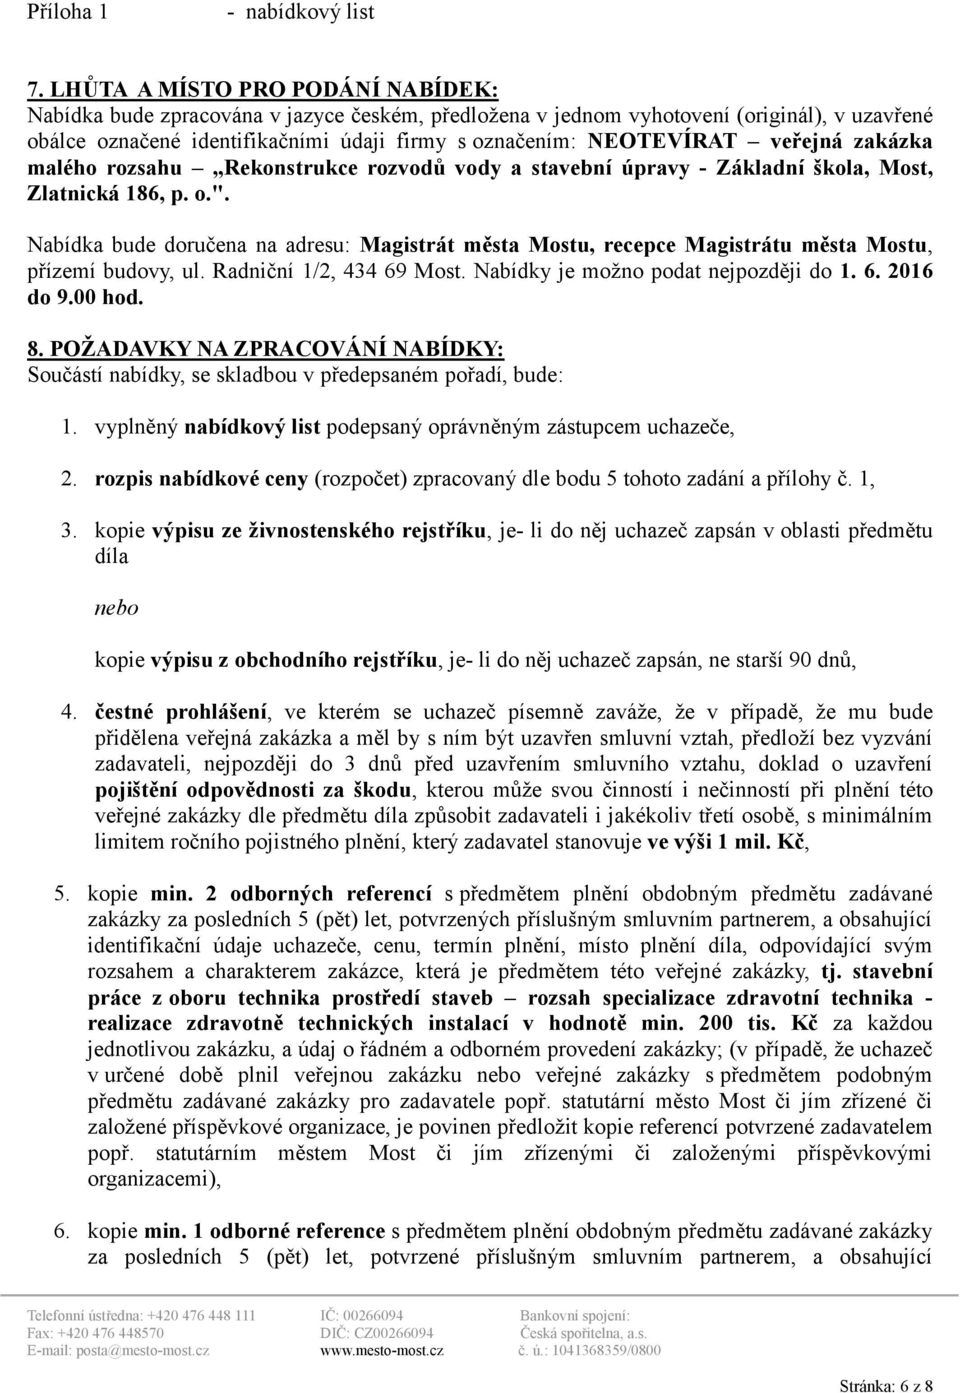 veřejná zakázka malého rozsahu Rekonstrukce rozvodů vody a stavební úpravy - Základní škola, Most, Zlatnická 186, p. o.".